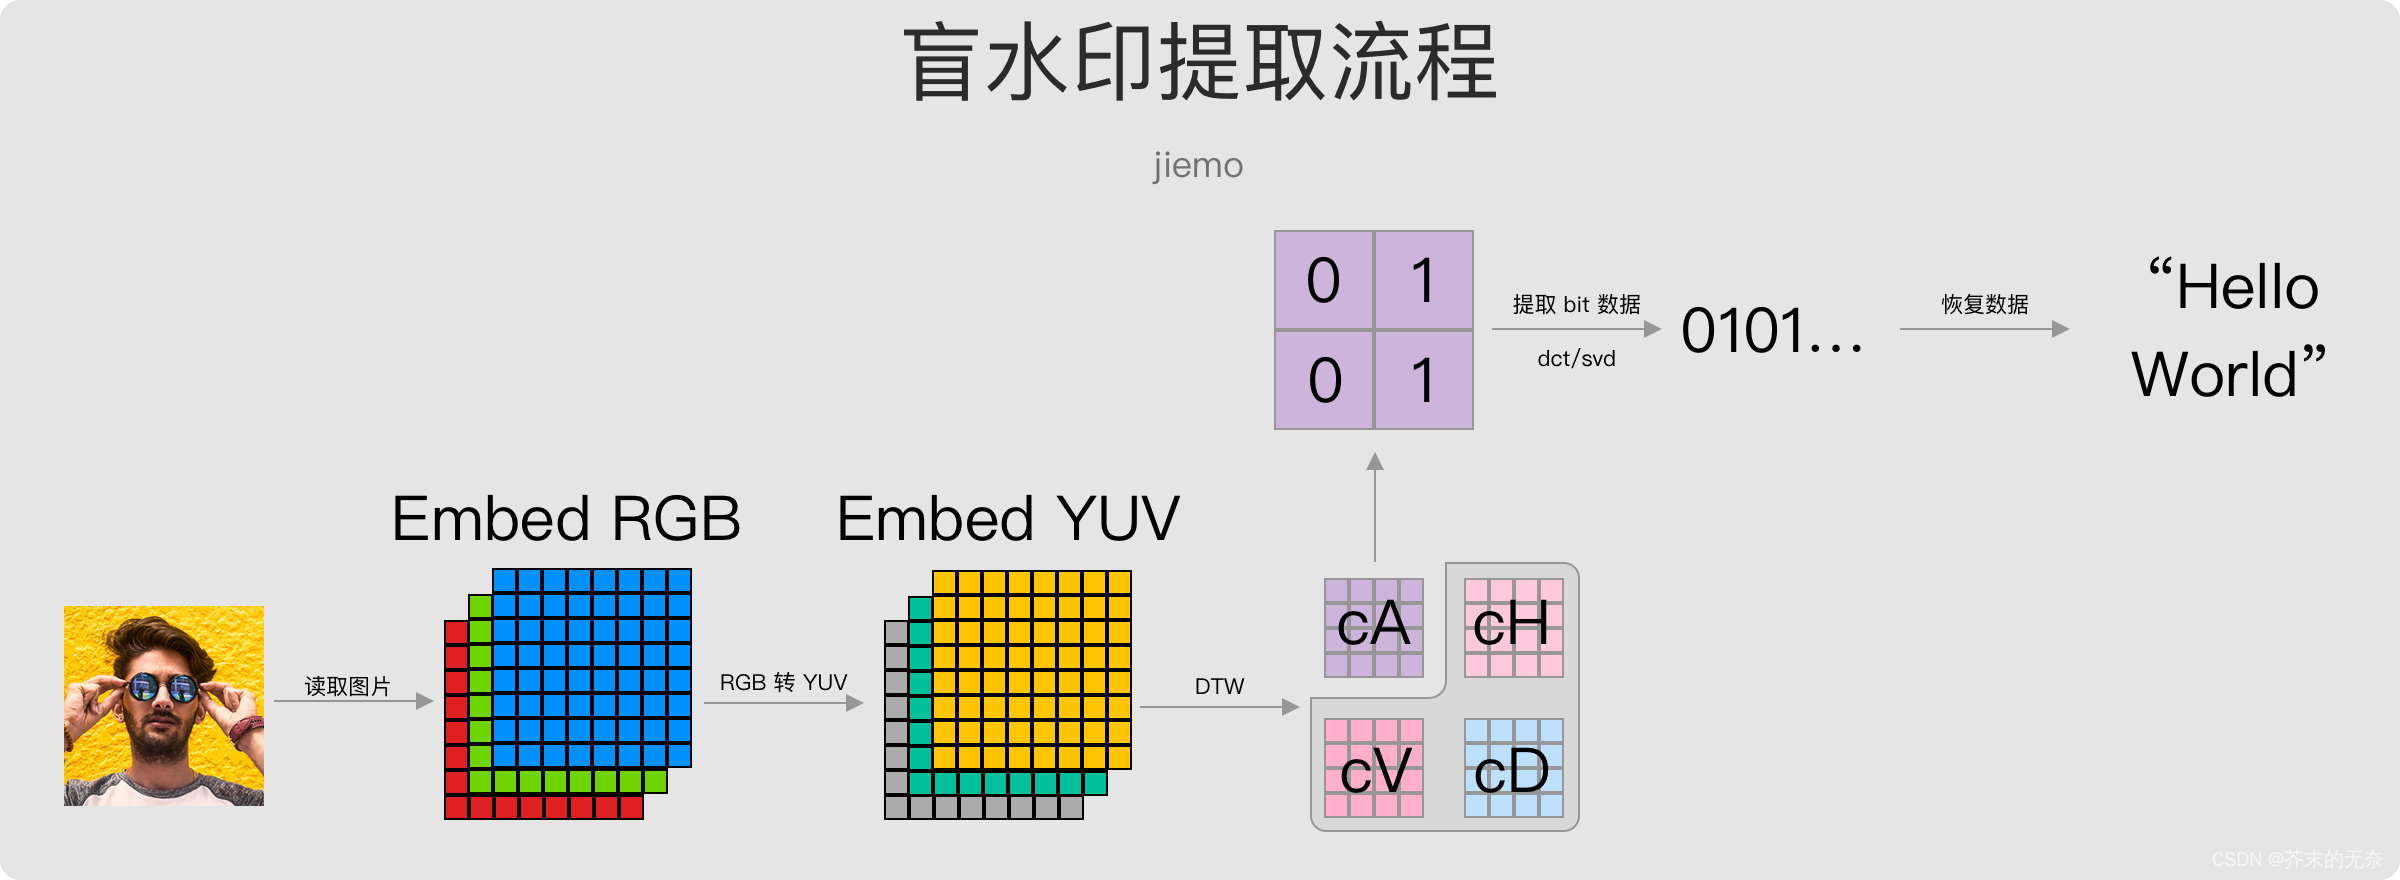 算法-盲水印、暗水印（Blind Watermark）算法简明教程：算法原理、流程以及基于C/C++ 的代码实现